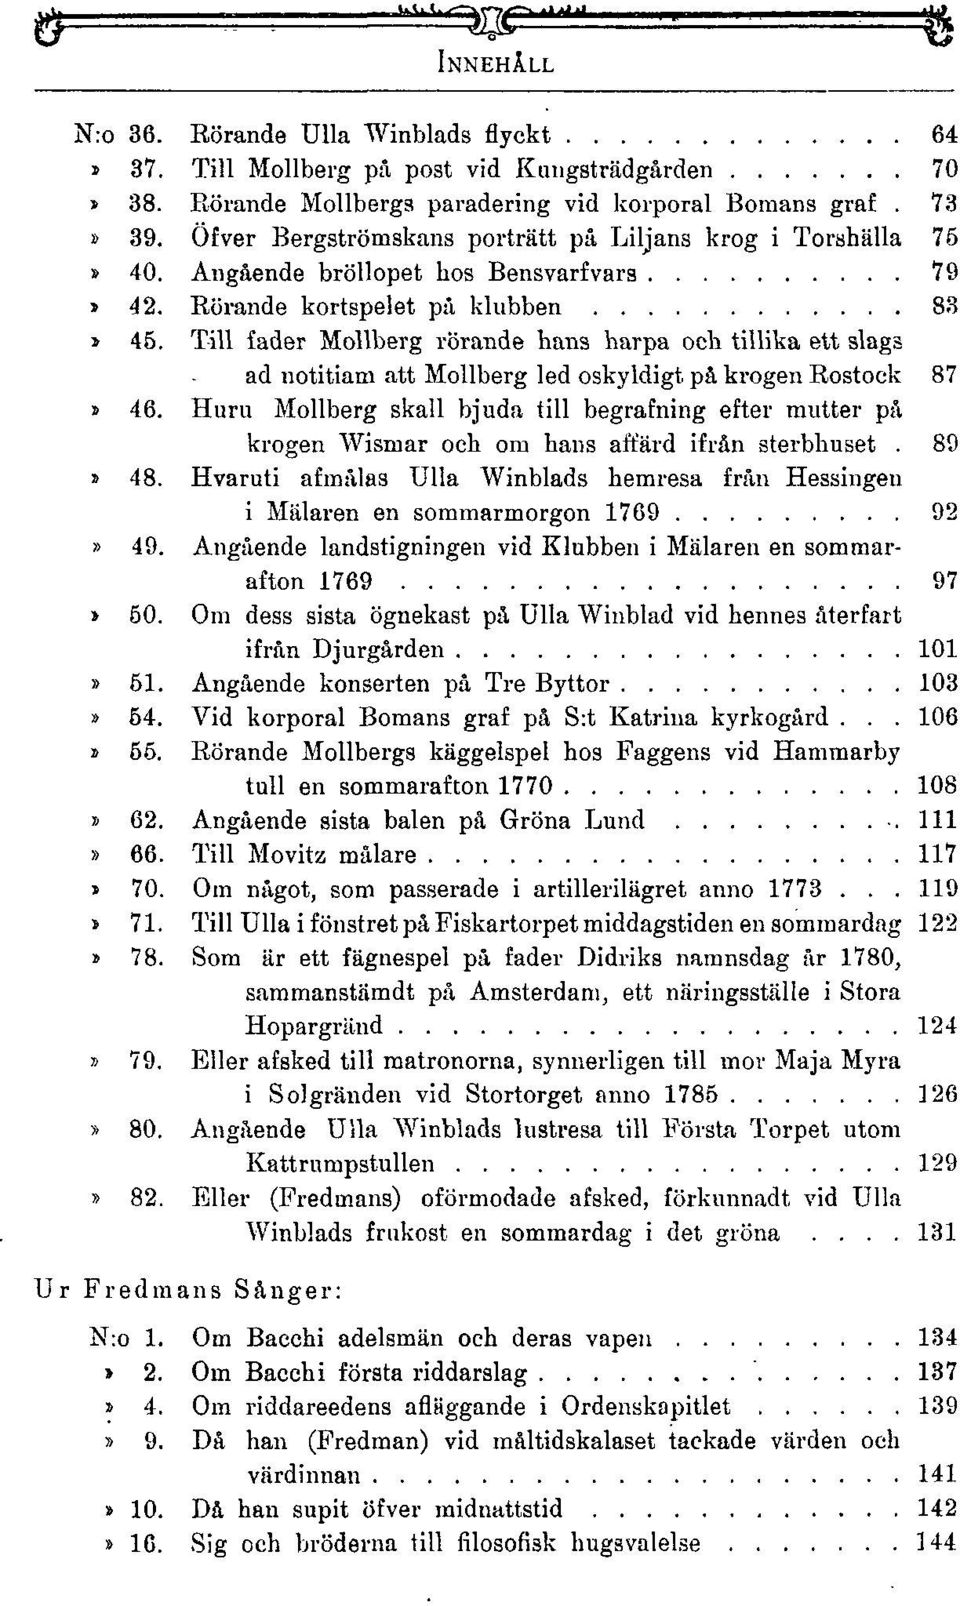 Till fader Mollberg rörande hans harpa och tillika ett slags ad notitiam att Mollberg led oskyldigt på krogen Rostock 87» 46.